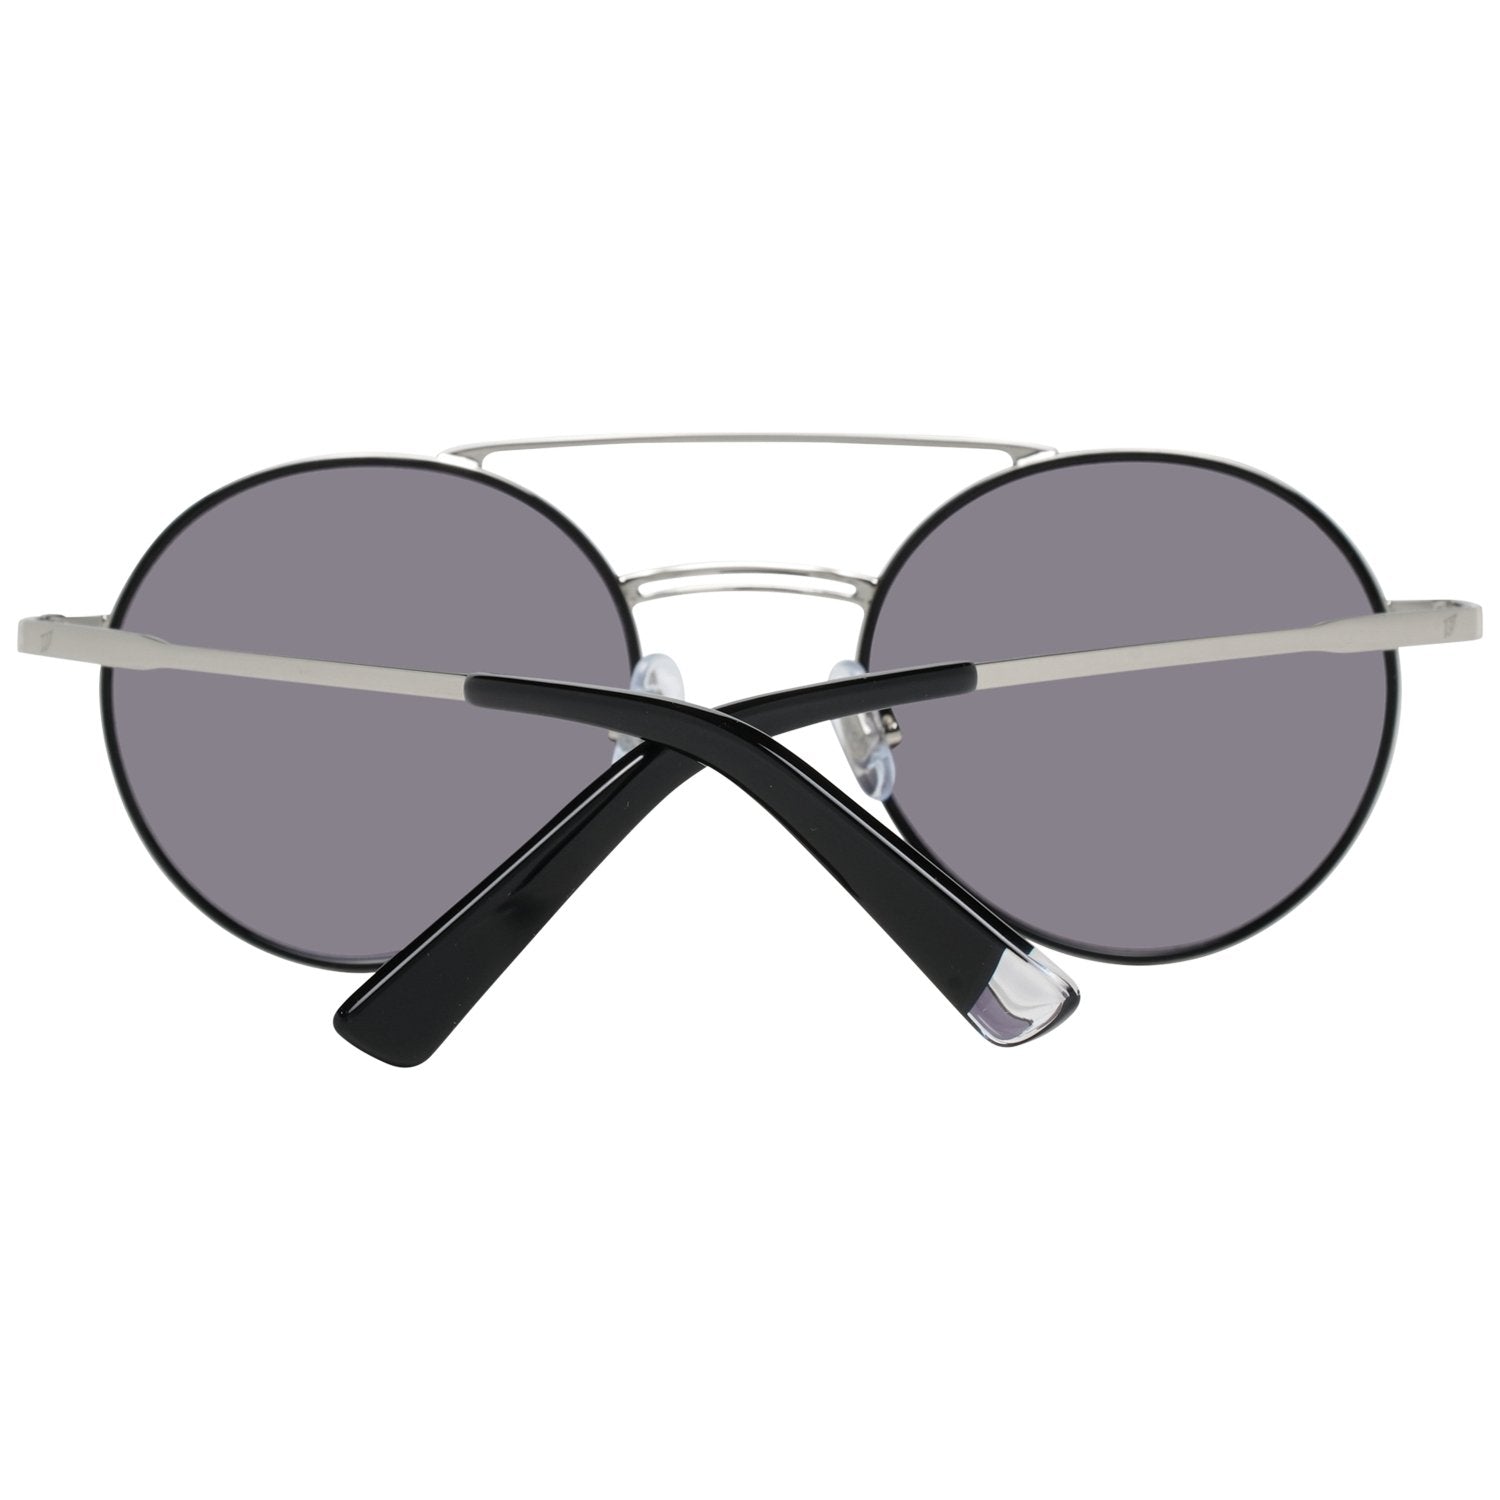 Web Silver Sunglasses for Woman - Fizigo